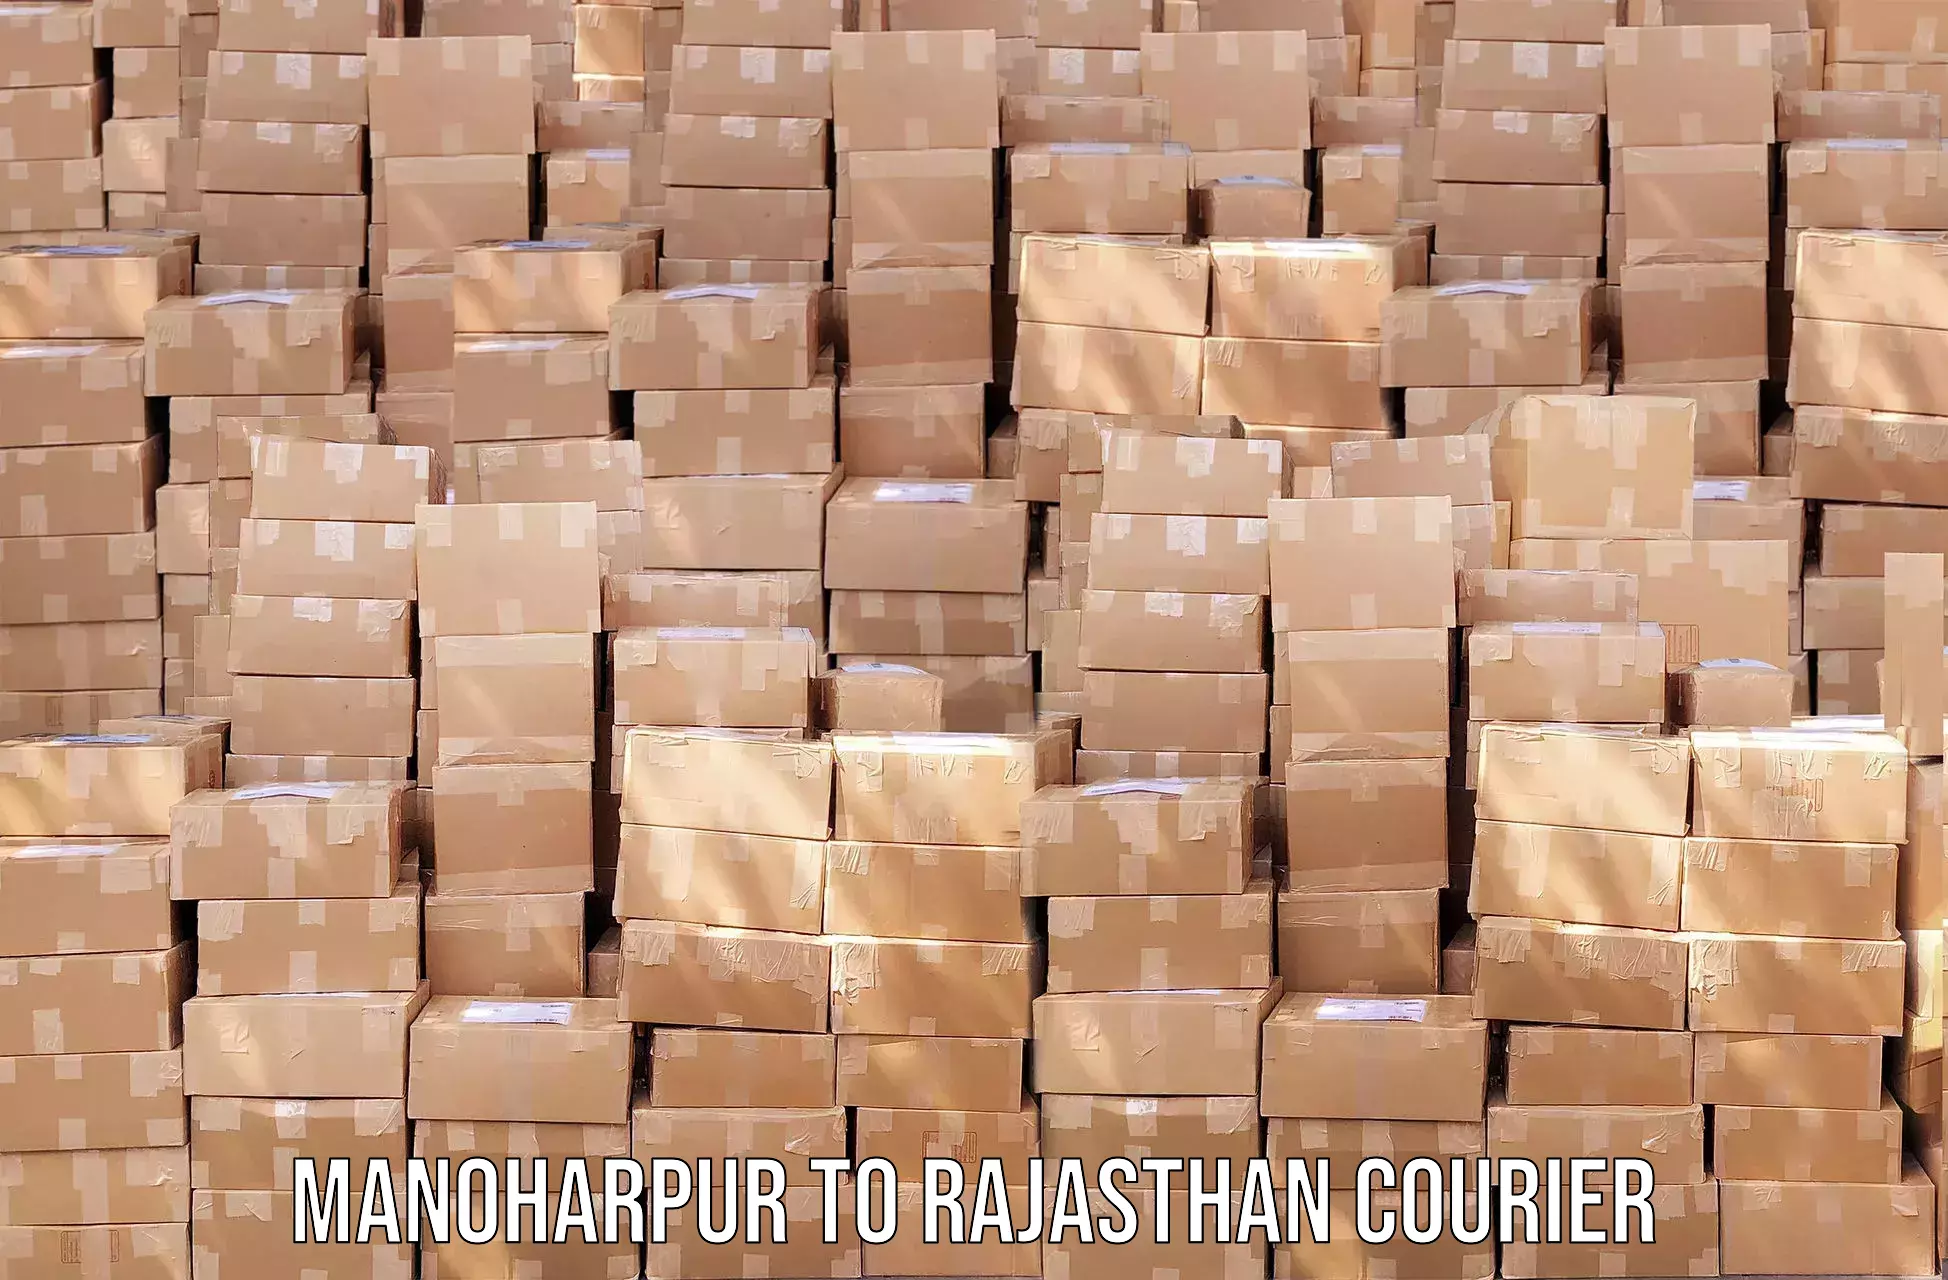 High-speed parcel service Manoharpur to Chhoti Sadri